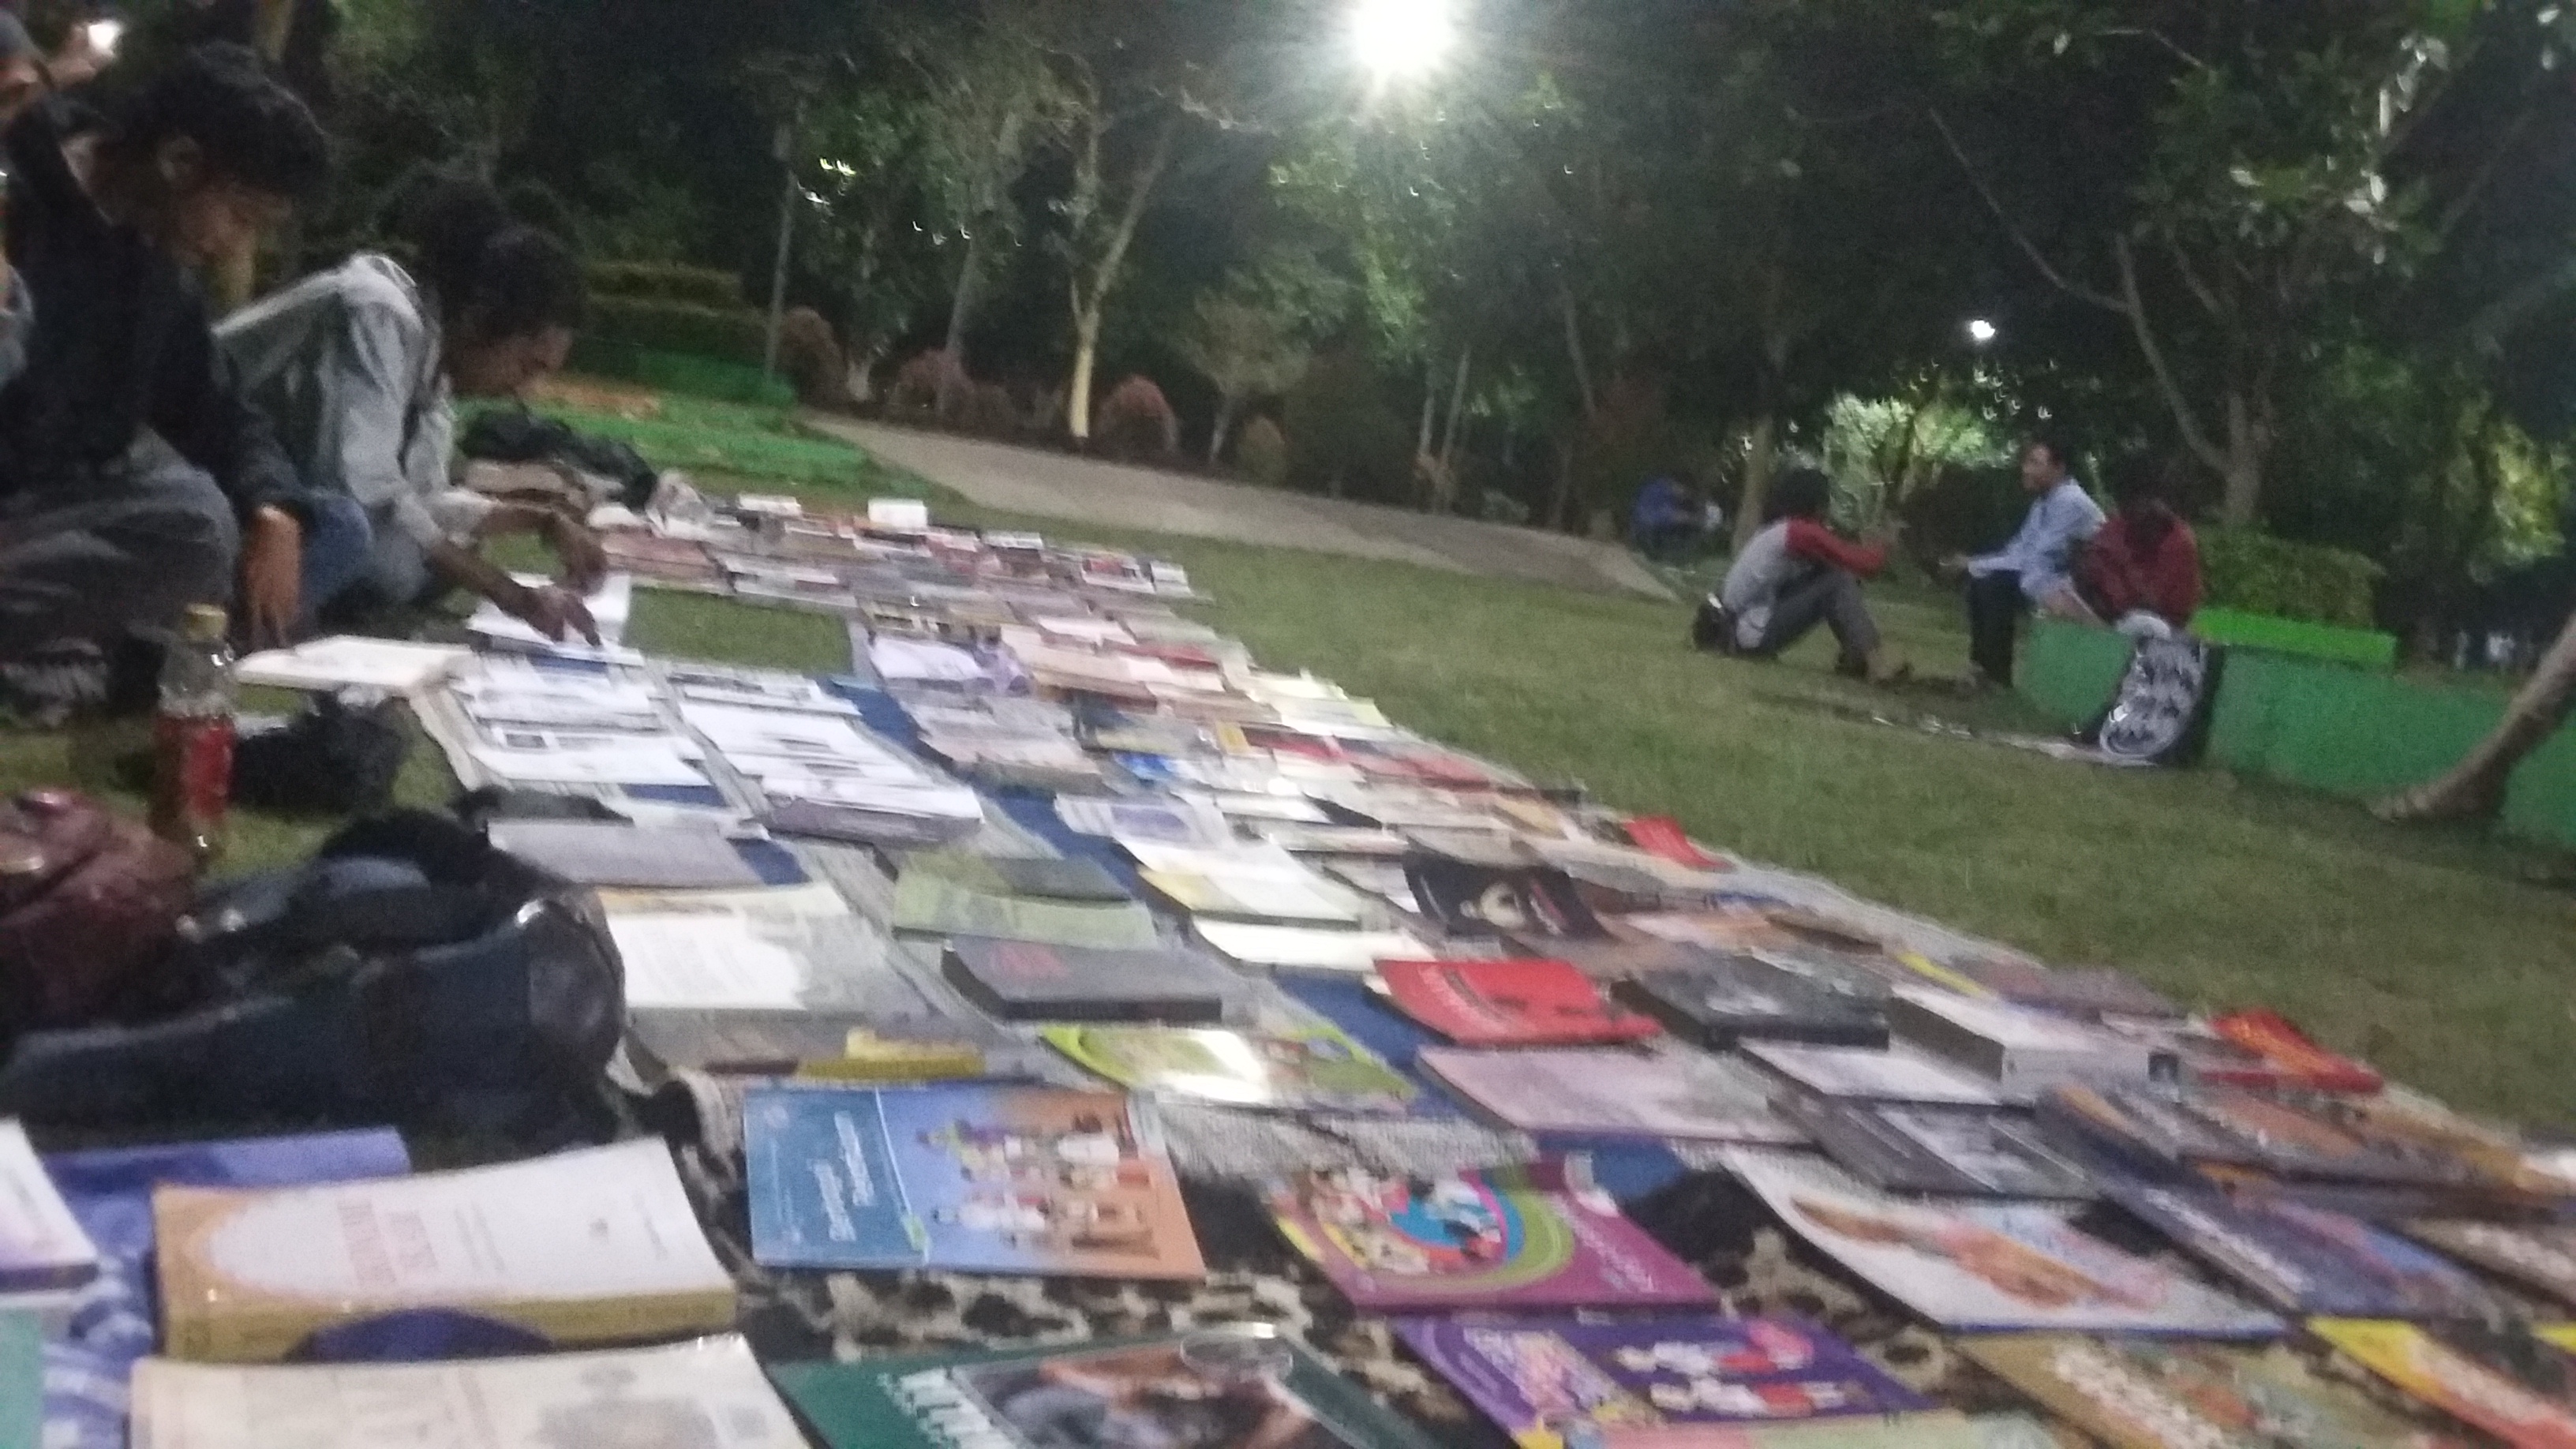 Jajaran buku yang ada di lapak baca jalanan di Taman Merjosari, Kota Malang pada 10 Agustus 2019 (Theo/Ngopibareng.id)